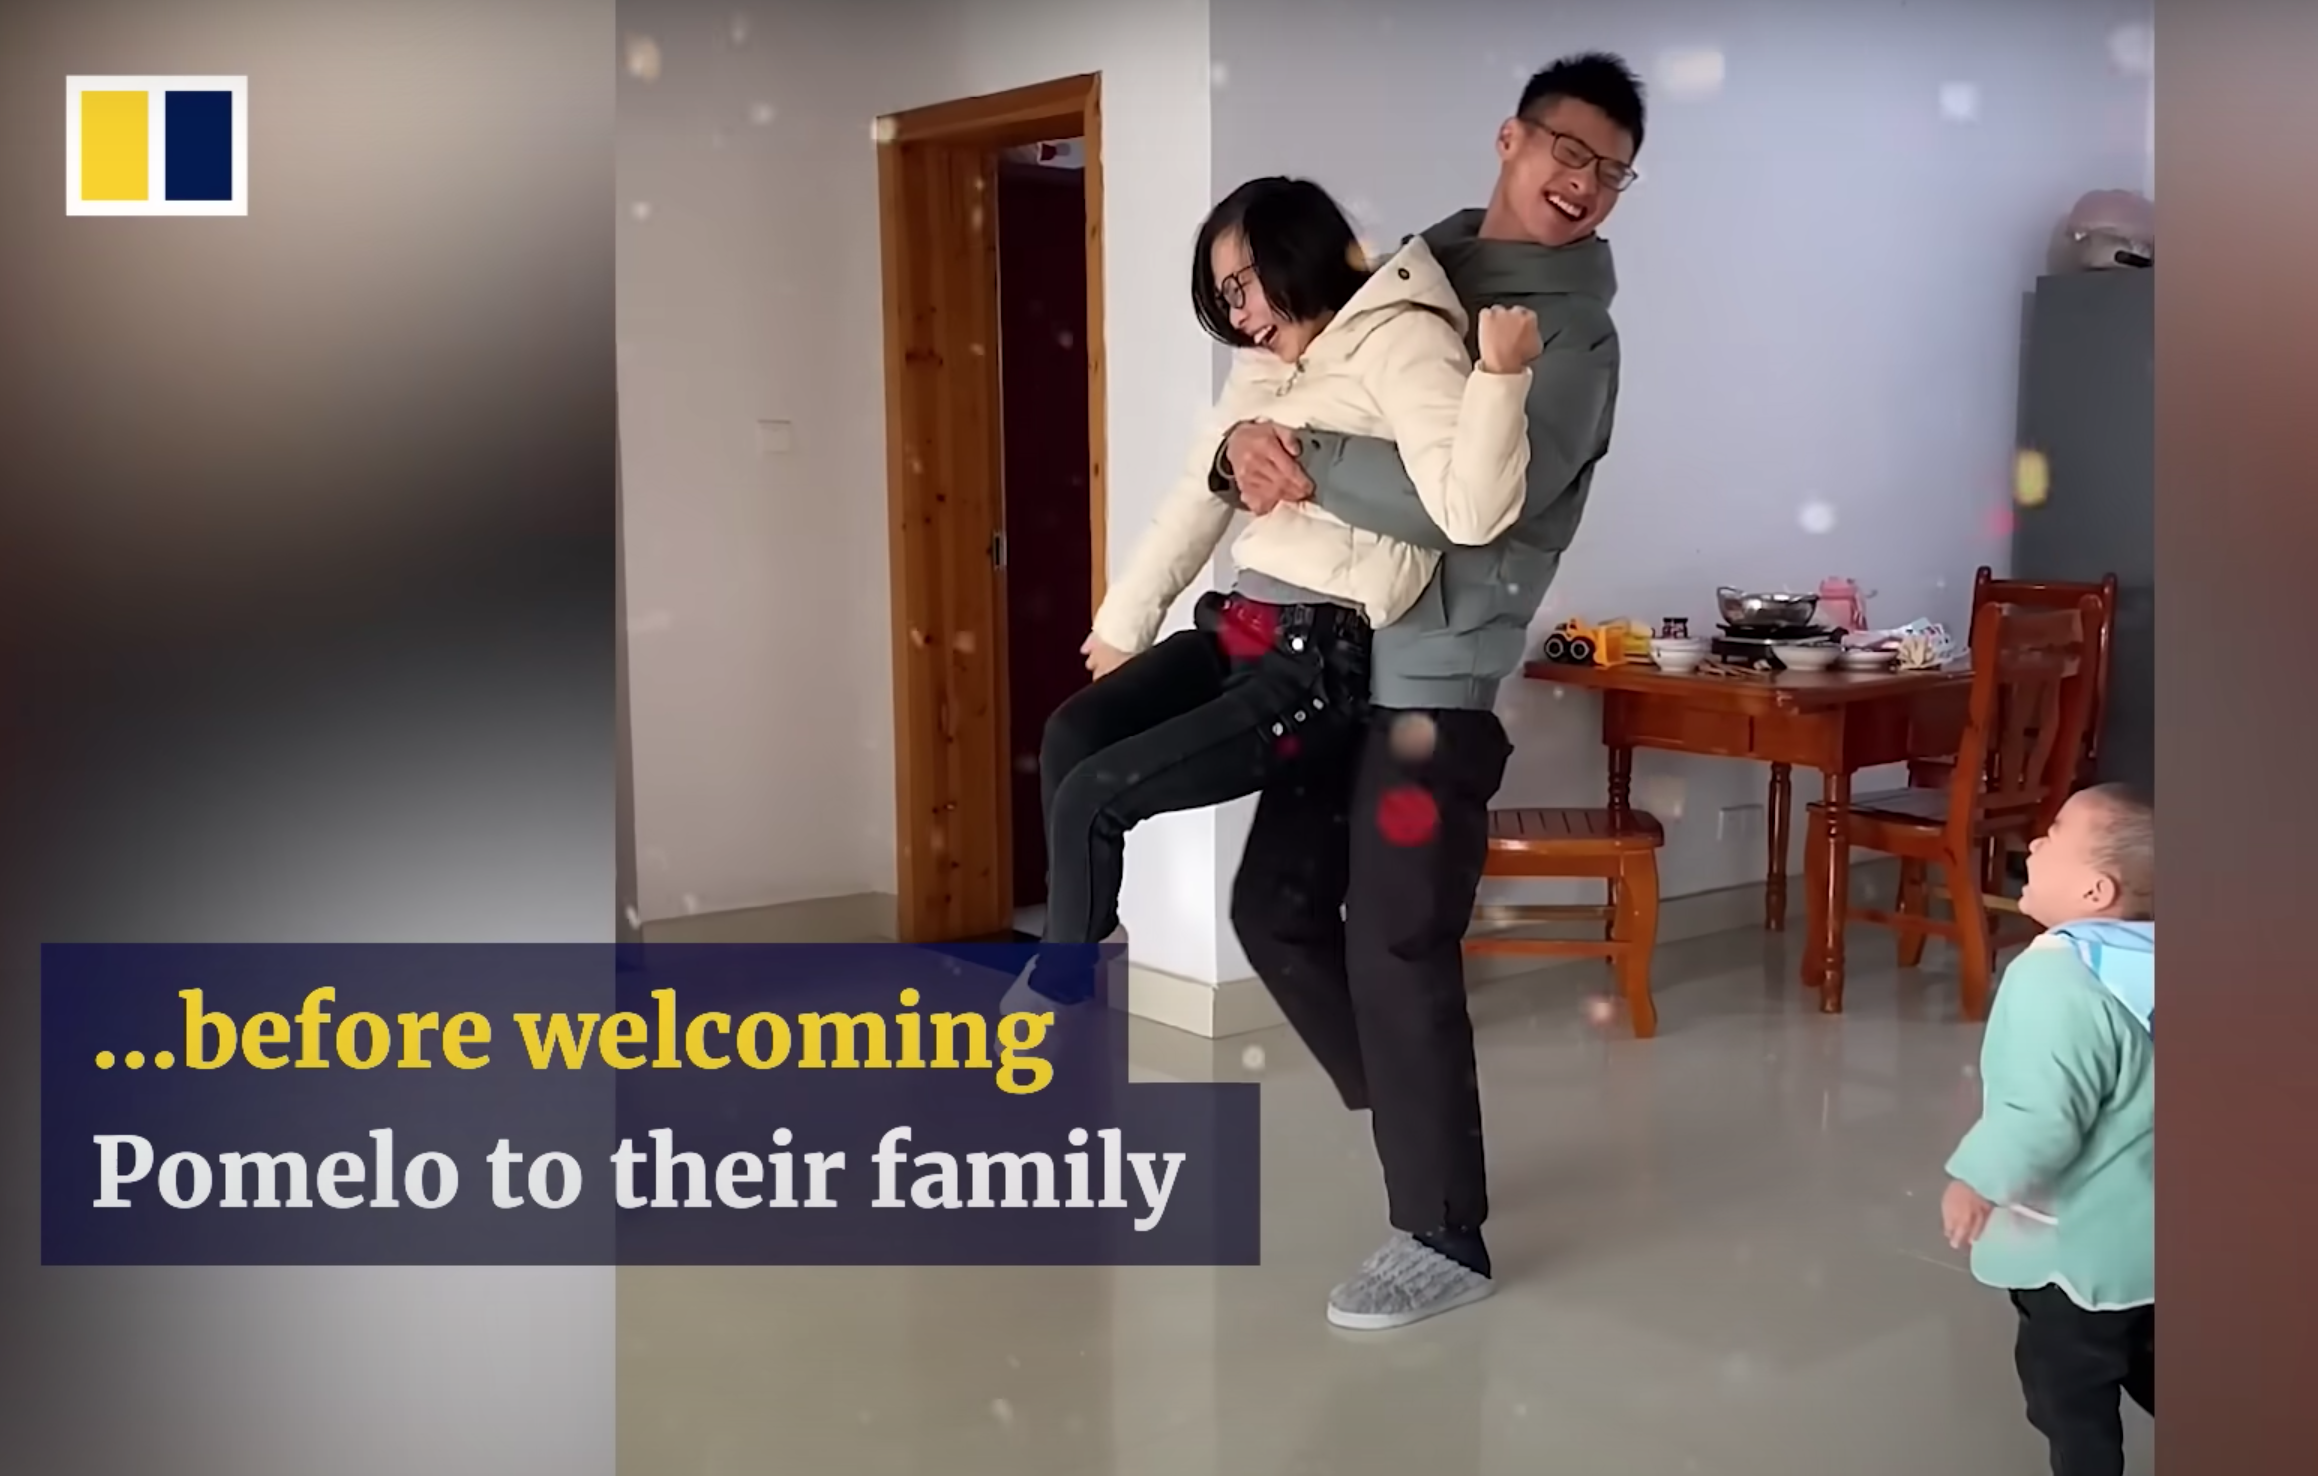 Les parents de Pomelo essaient de vivre le plus normalement possible. | Source : Youtube.com/South China Morning Post